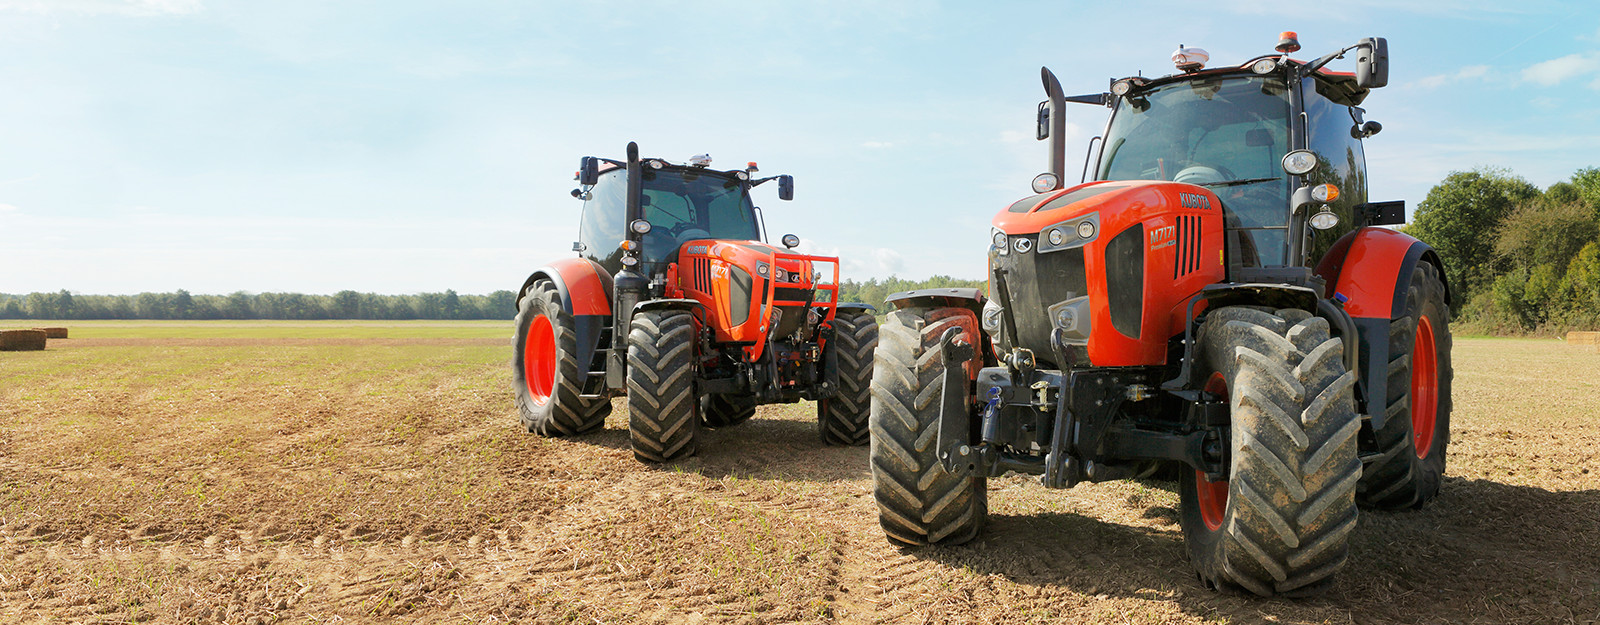 Le nostre macchine agricole<br />
soddisferanno ogni tua esigenza